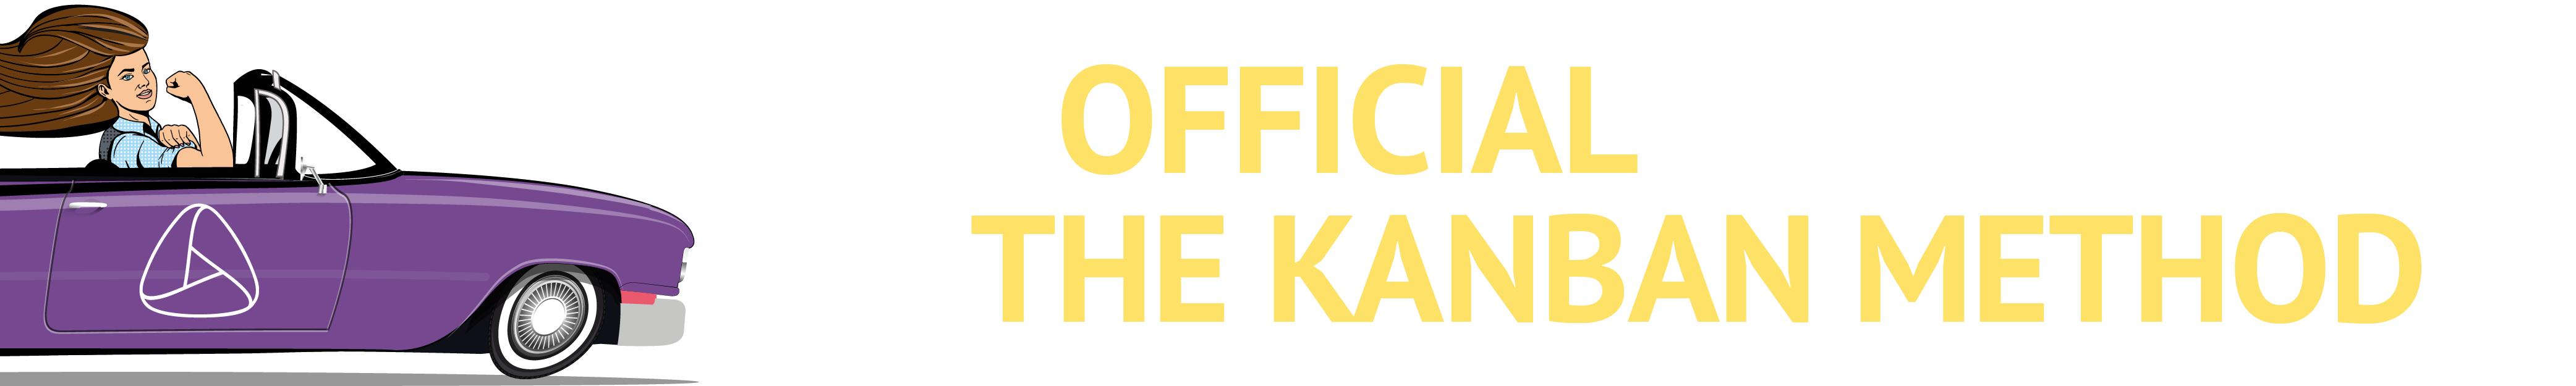 Kanban Guide title